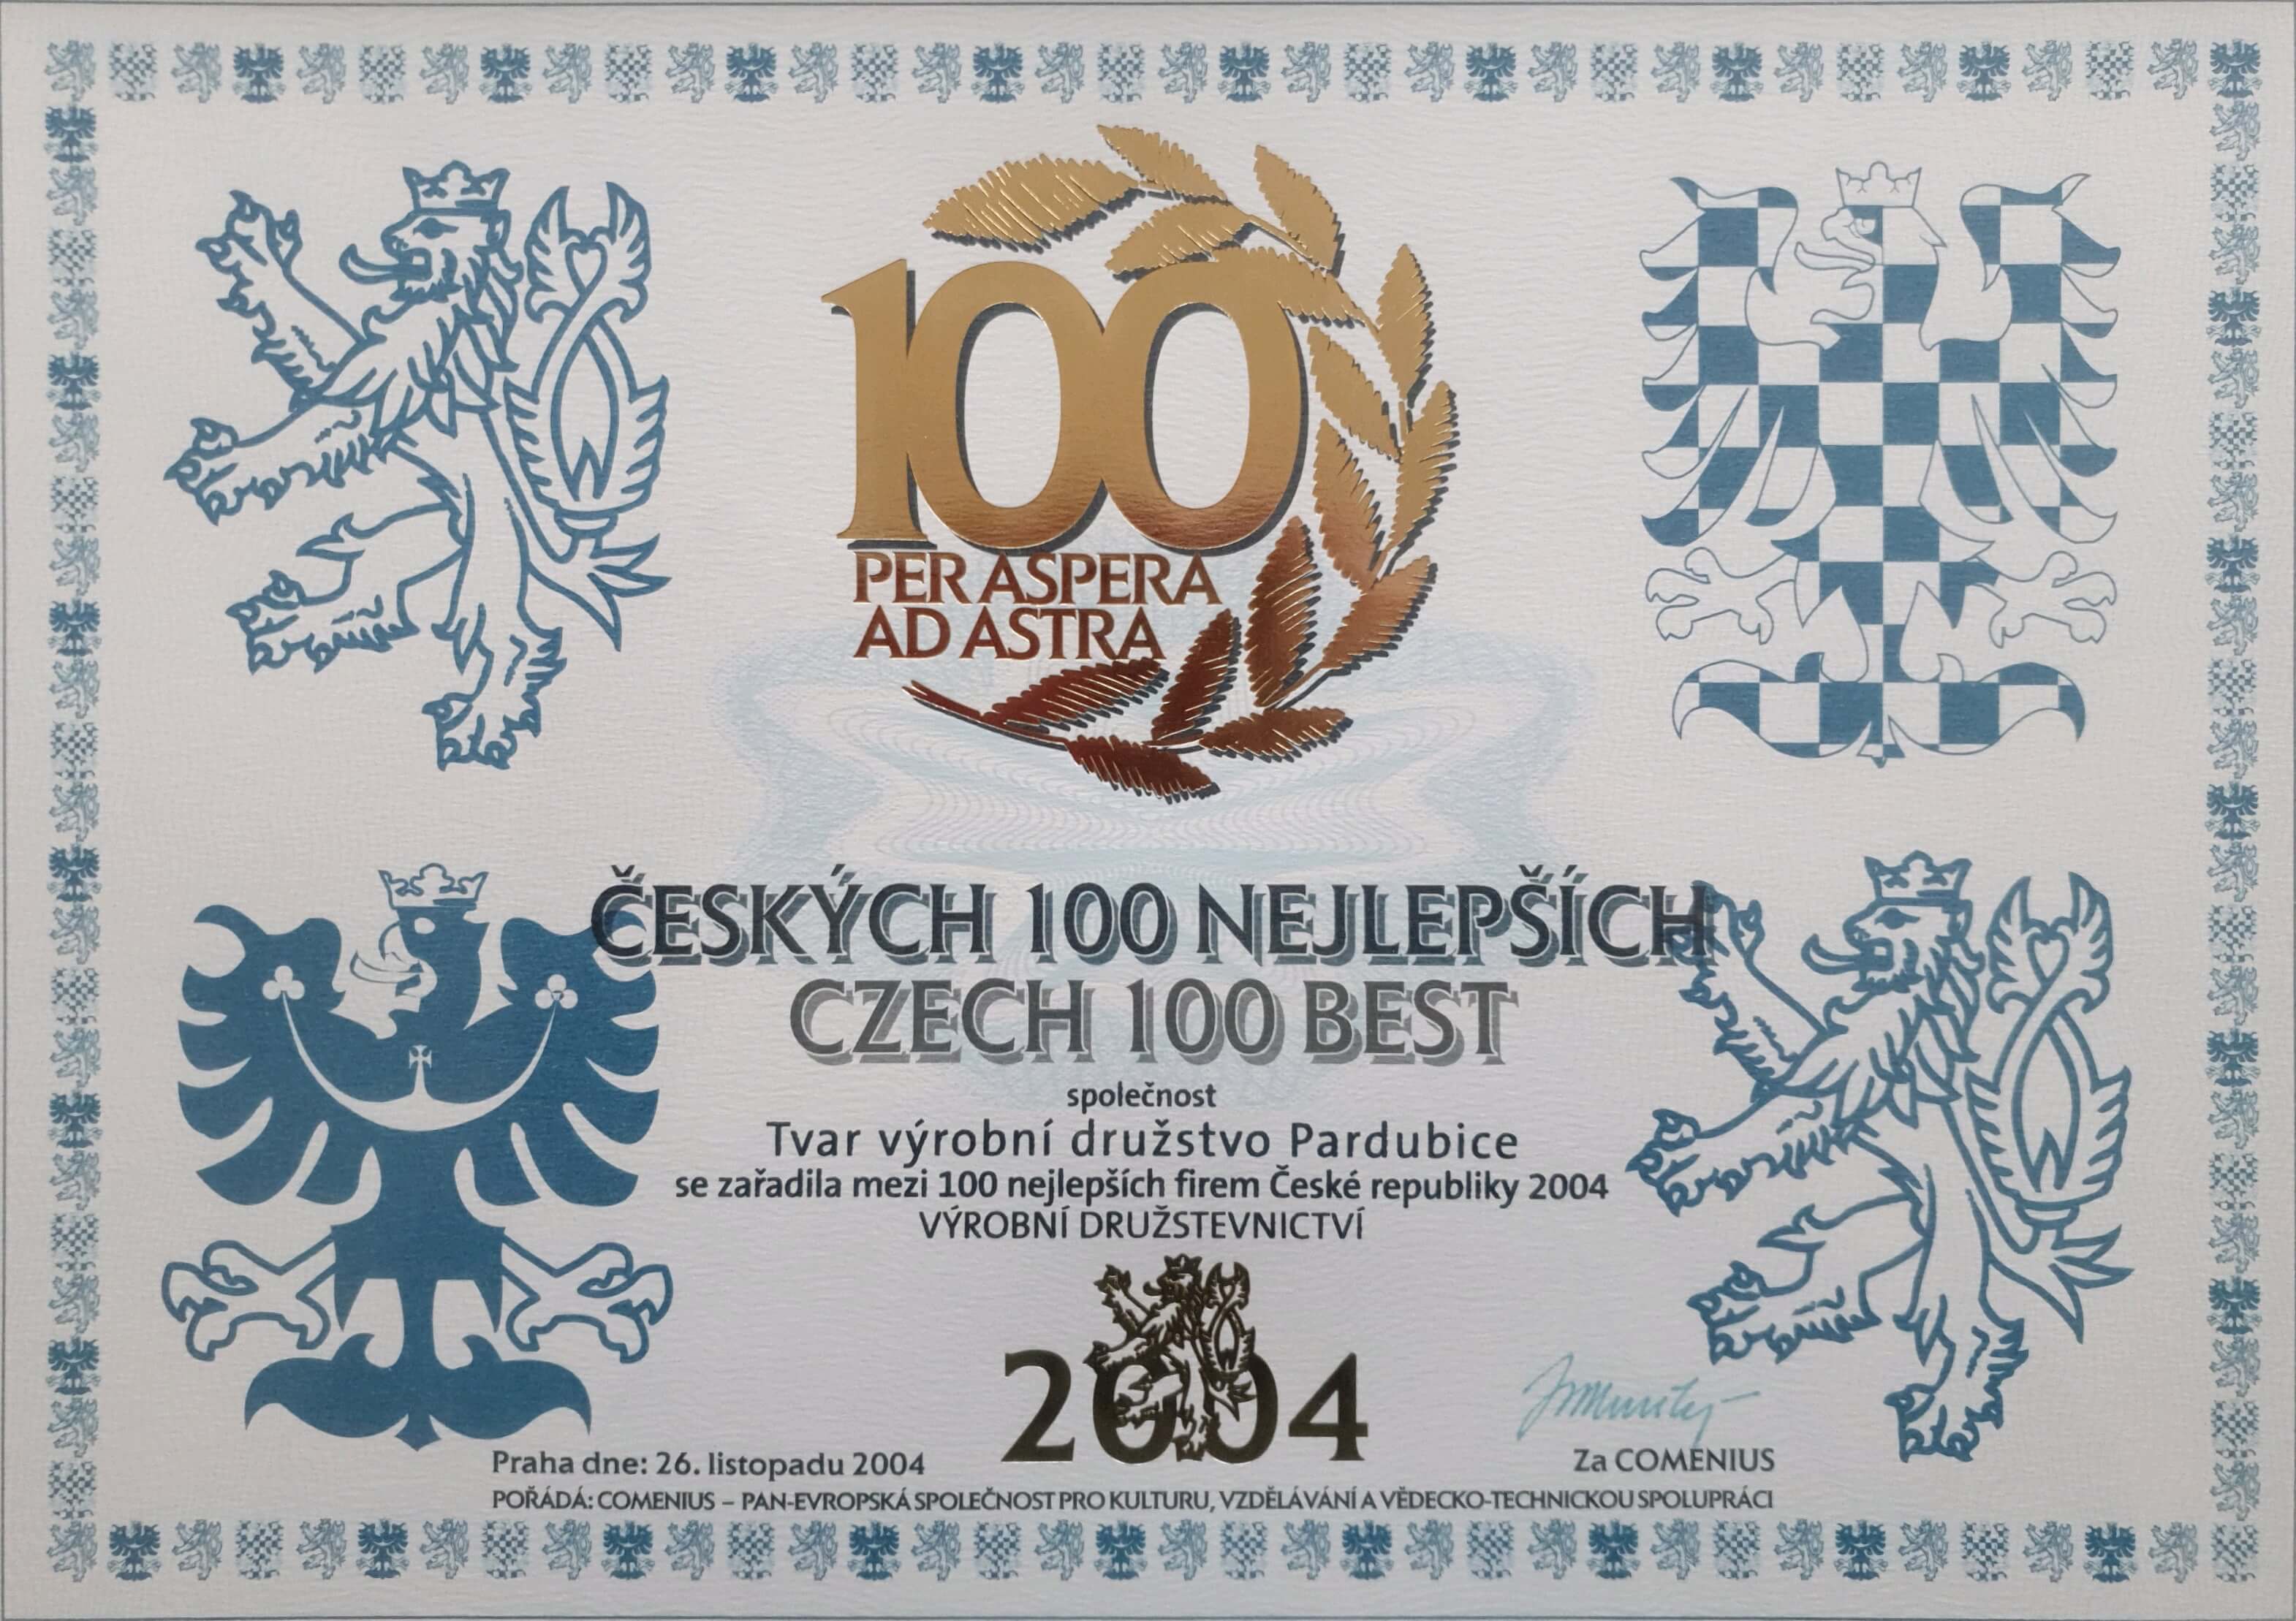 Czech 100 Best